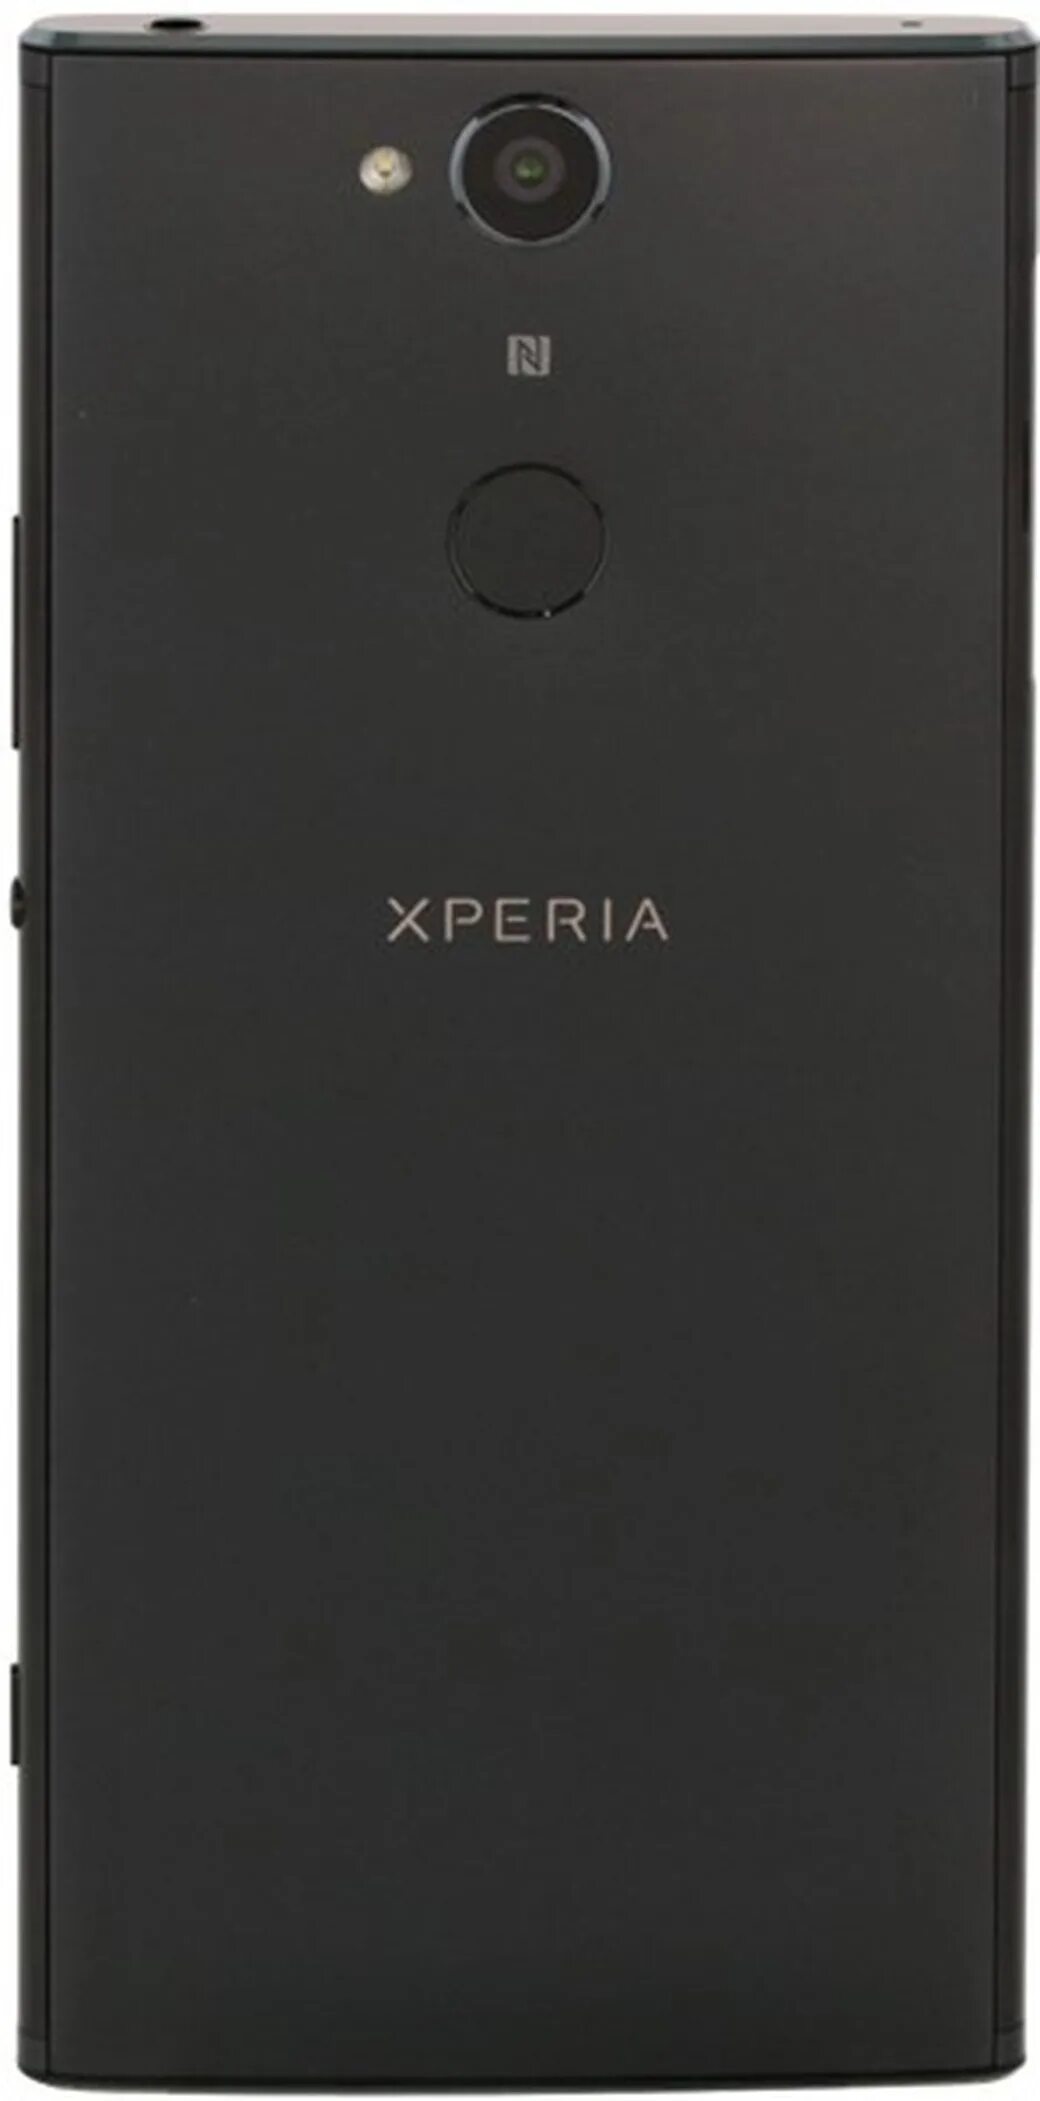 Sony Xperia xa2. Sony Xperia xa2 Dual. Sony Xperia xa2 Dual h4113.